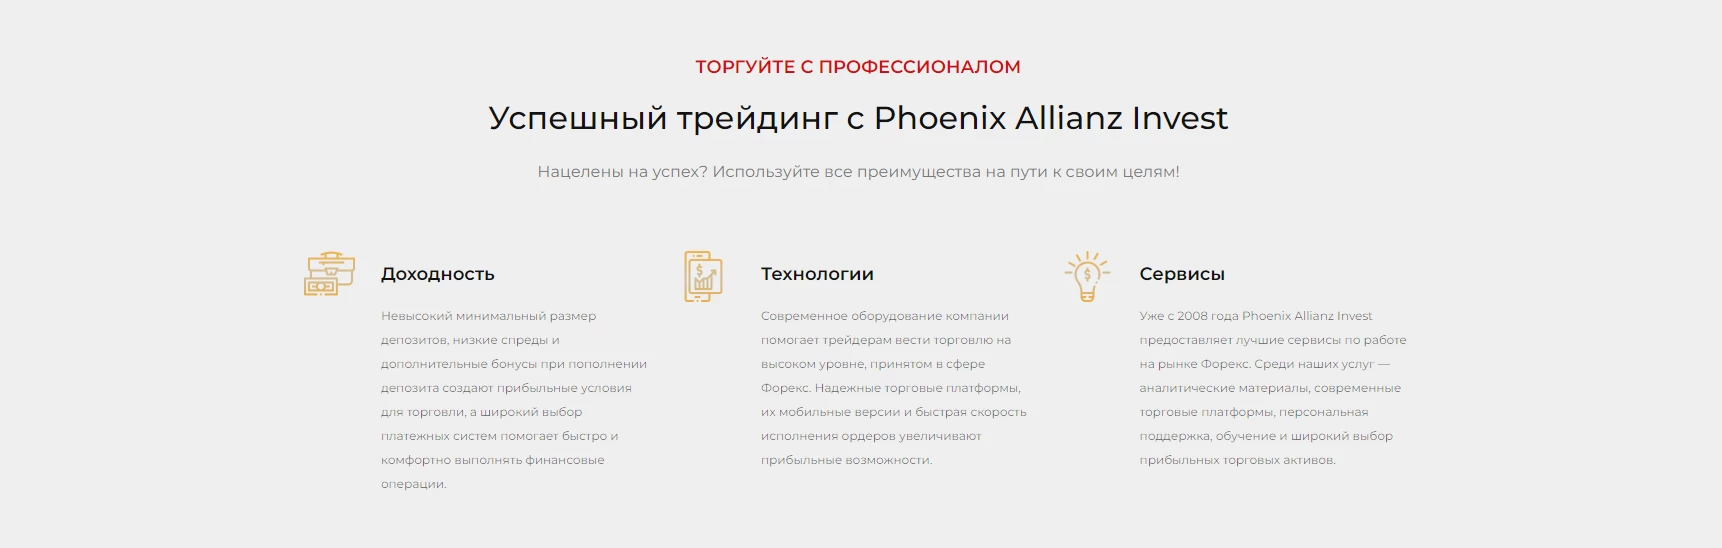 Phoenix Allianz Invest: условия торговли